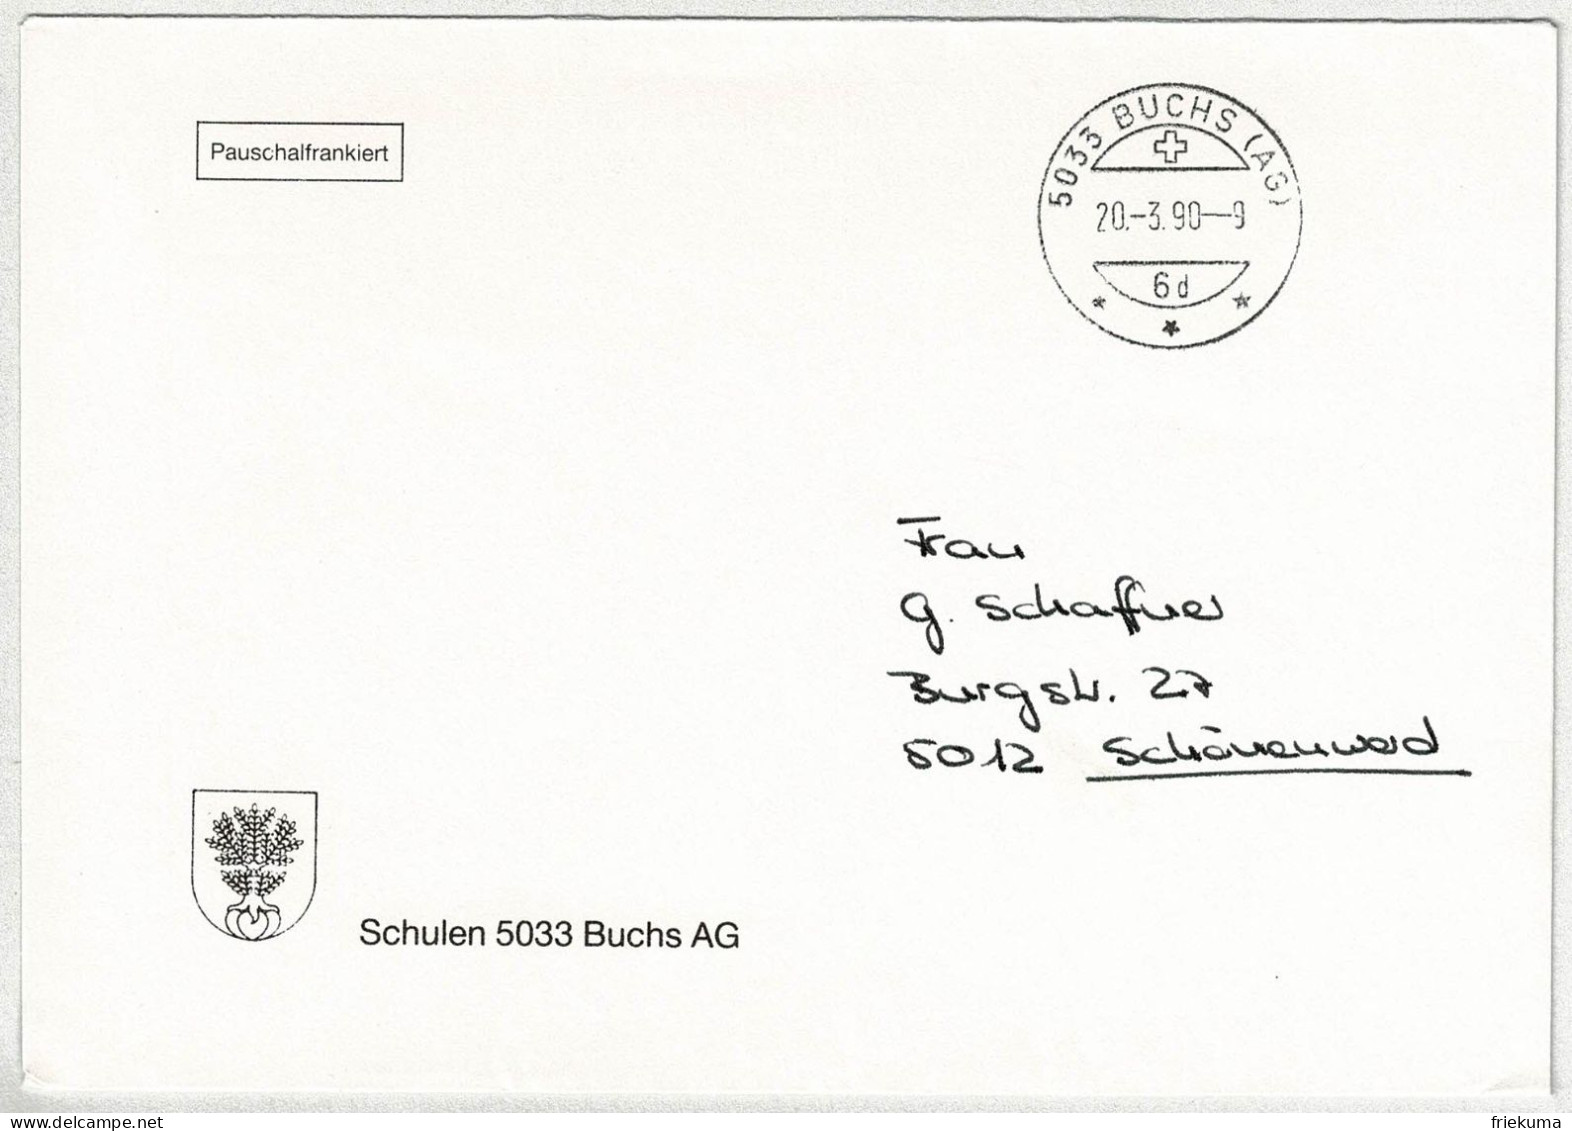 Schweiz 1990, Brief Pauschalfrankiert Buchs - Schönenwerd - Marcophilie